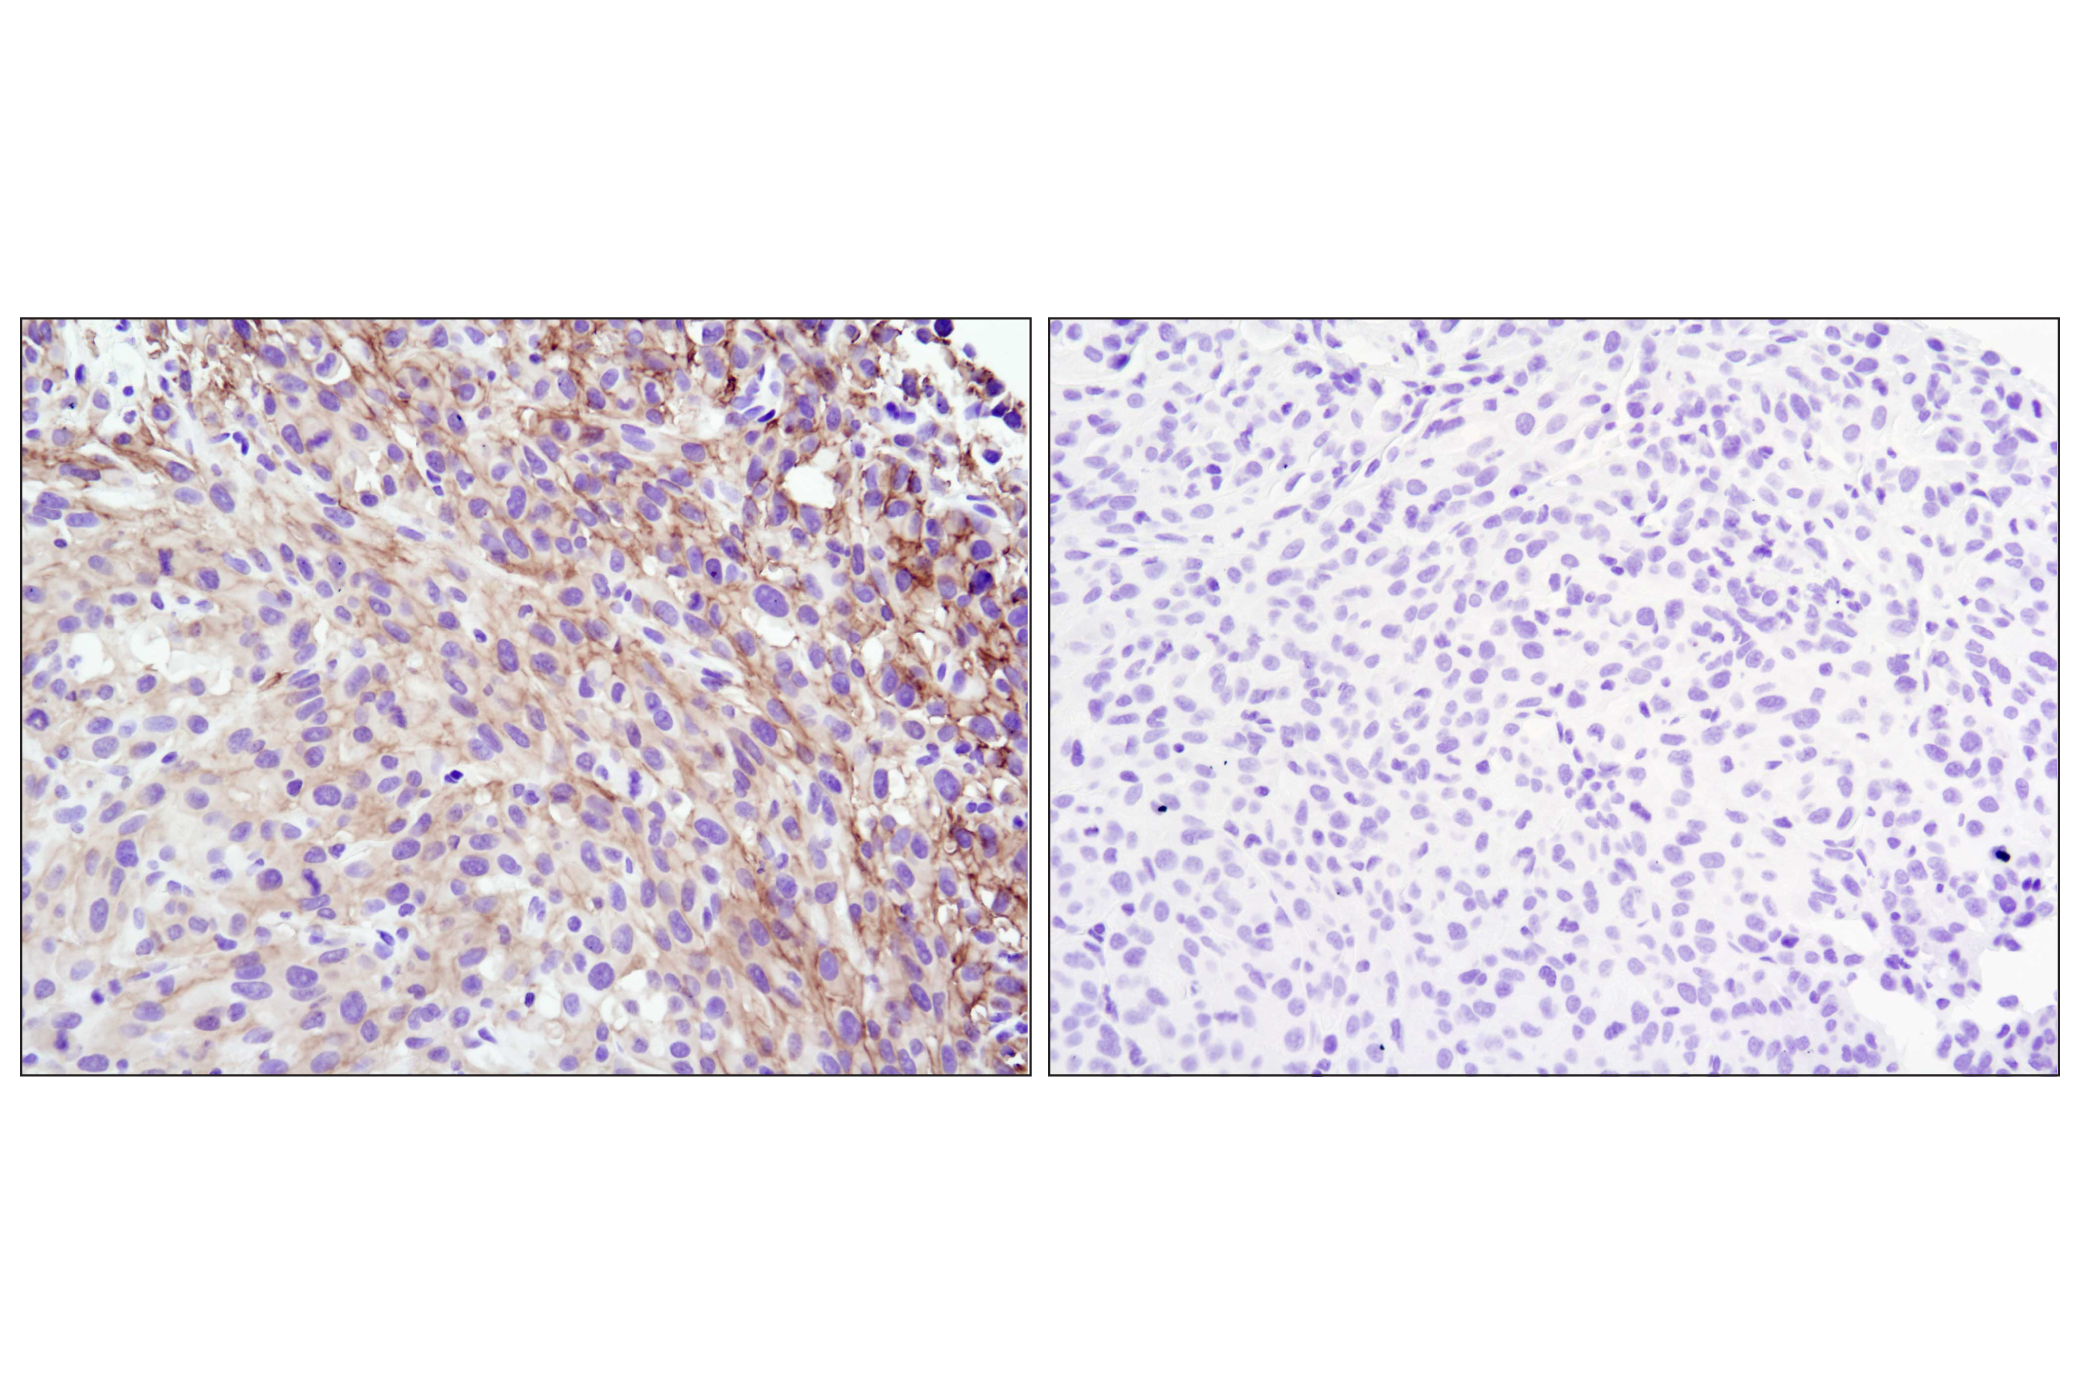  Image 51: Oncogene and Tumor Suppressor Antibody Sampler Kit